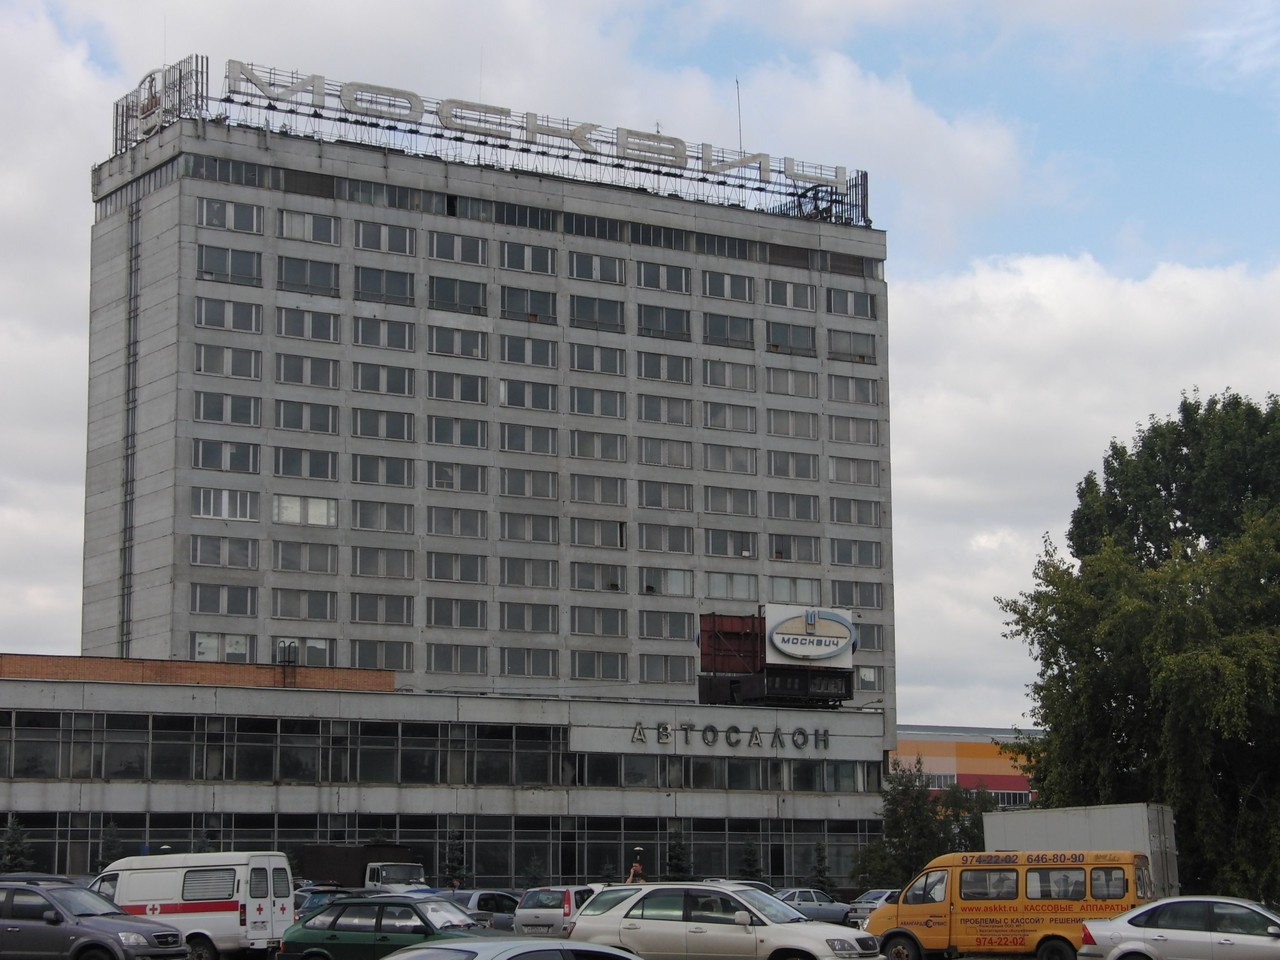 Завод АЗЛК на Волгоградском проспекте выпускал автомобили «Москвич» до 2001 года. В 1998 году один из цехов частично выкупила компания Renault и за последующие восемь лет превратила его в завод по сборке Renault Logan и других моделей